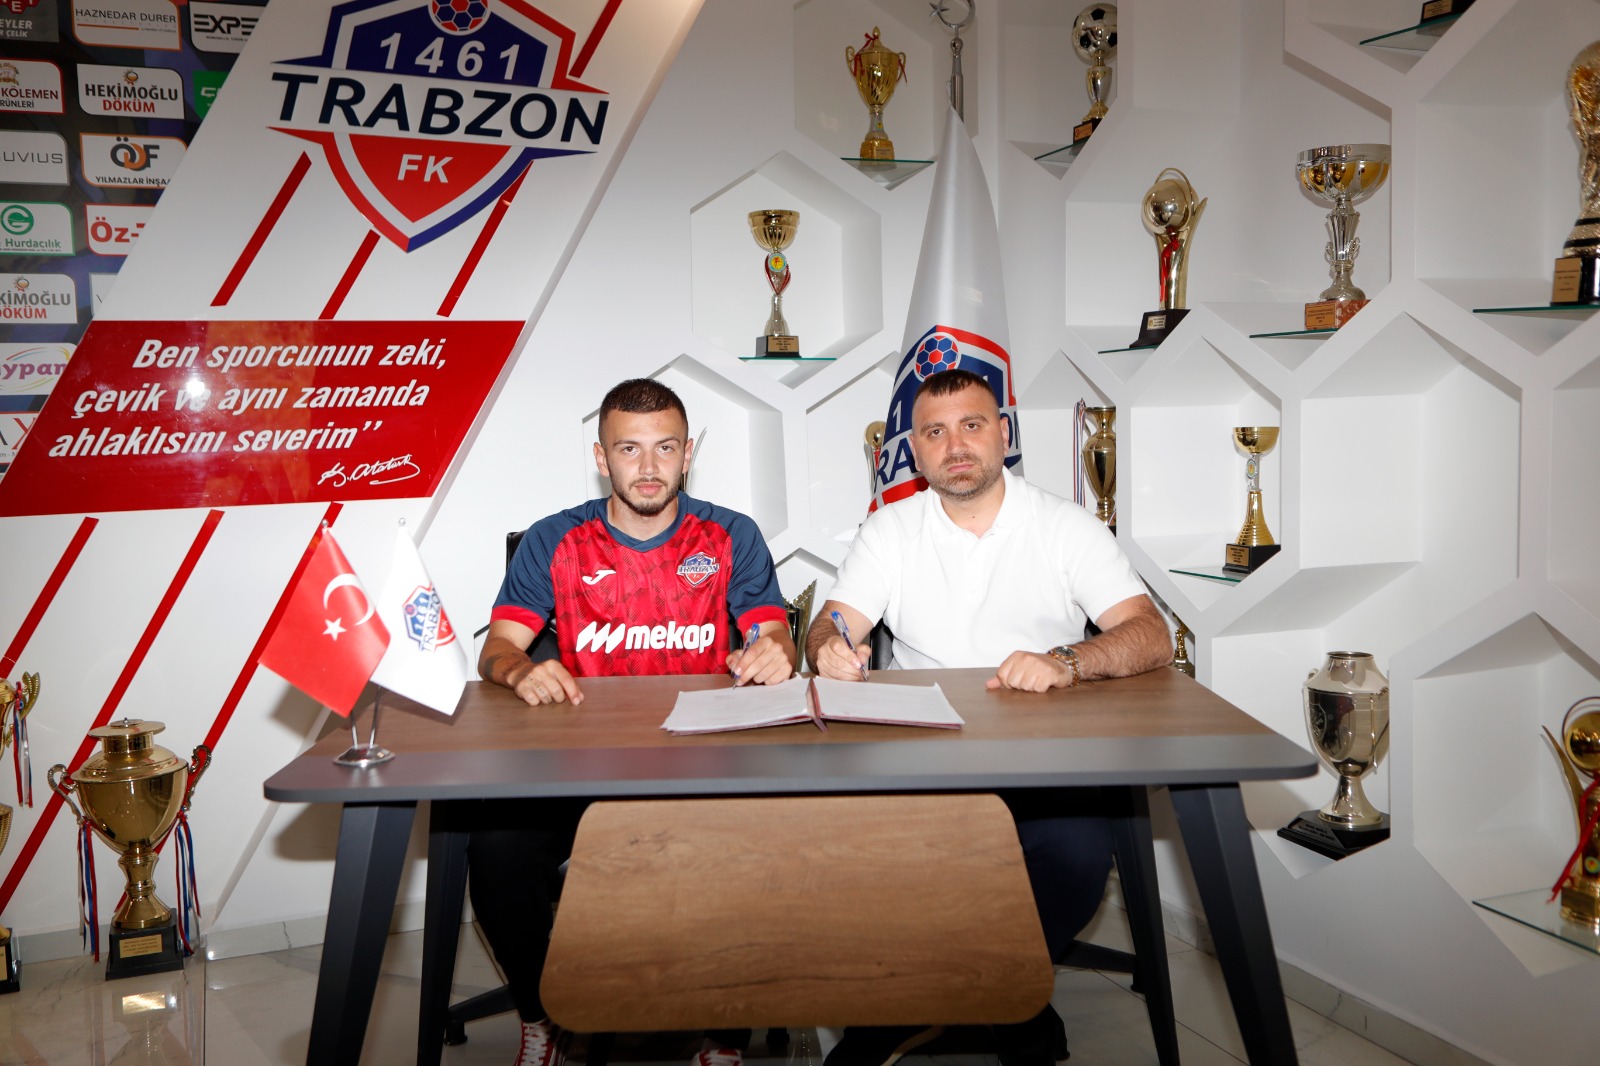 1461 Trabzon FK, Trabzonspor altyapısından transfer gerçekleştirdi